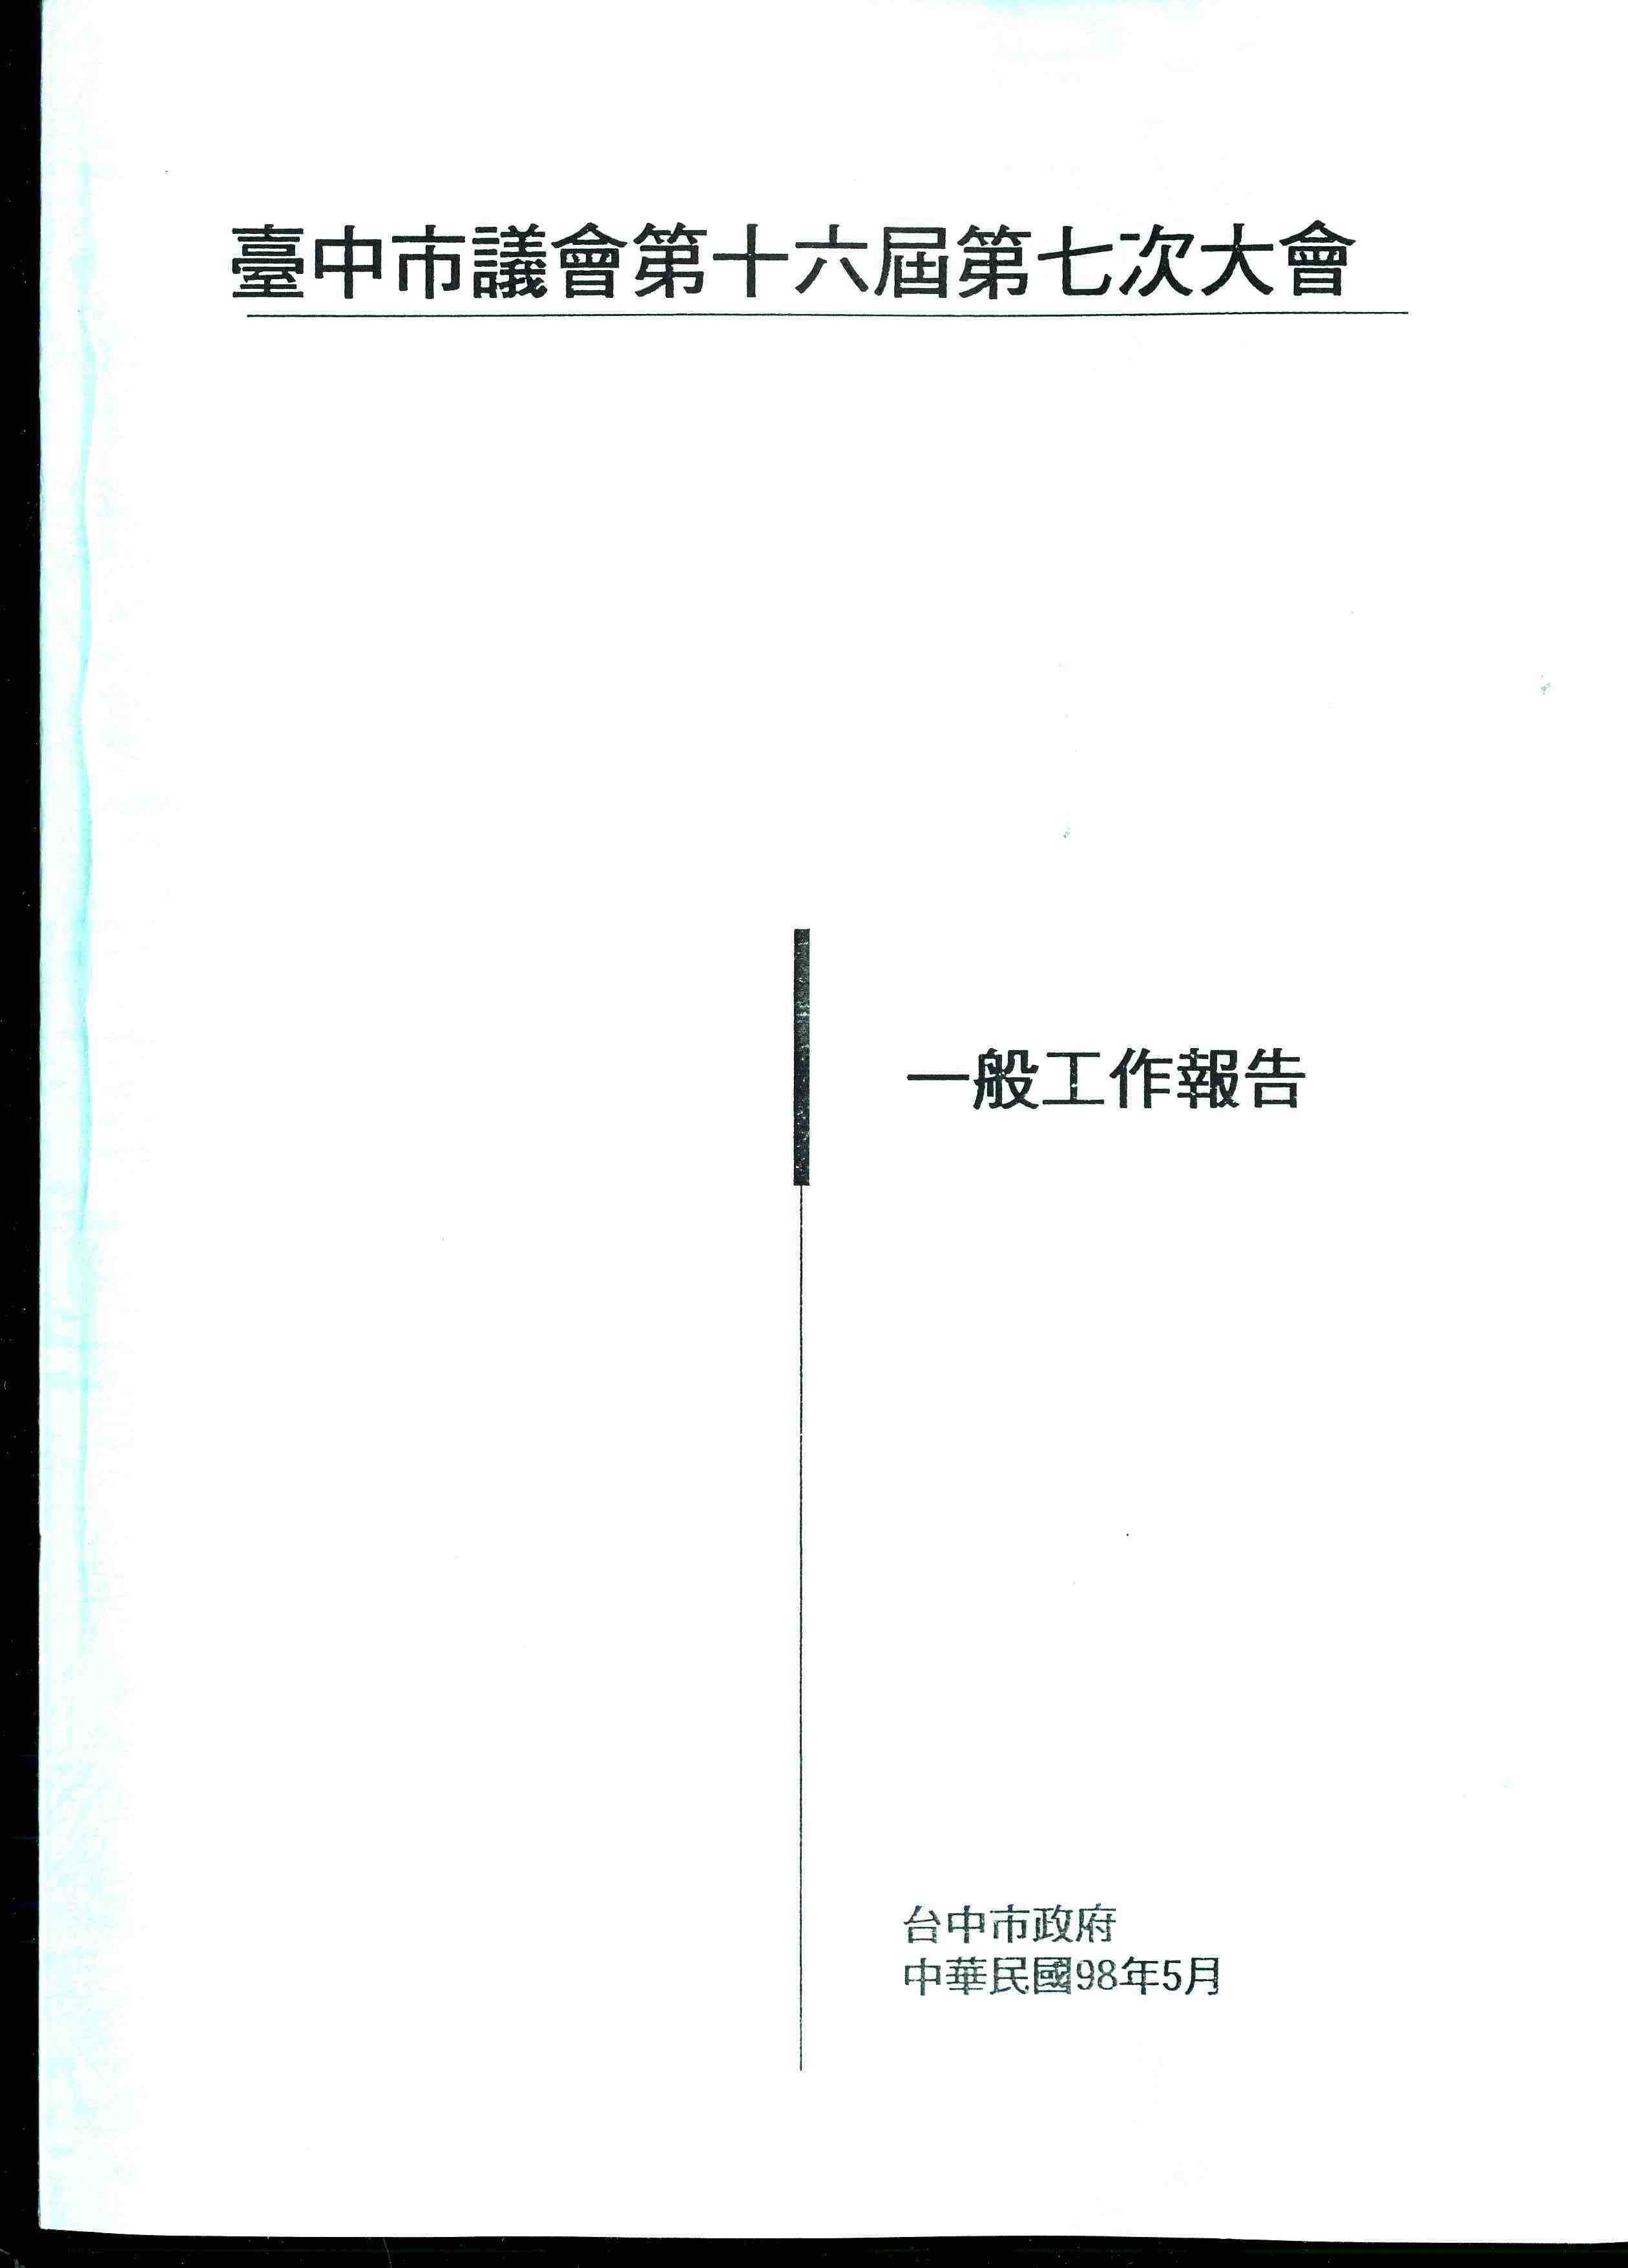 台中市政府一般工作報告(九十七年九月一日至九十八年三月三十一日)